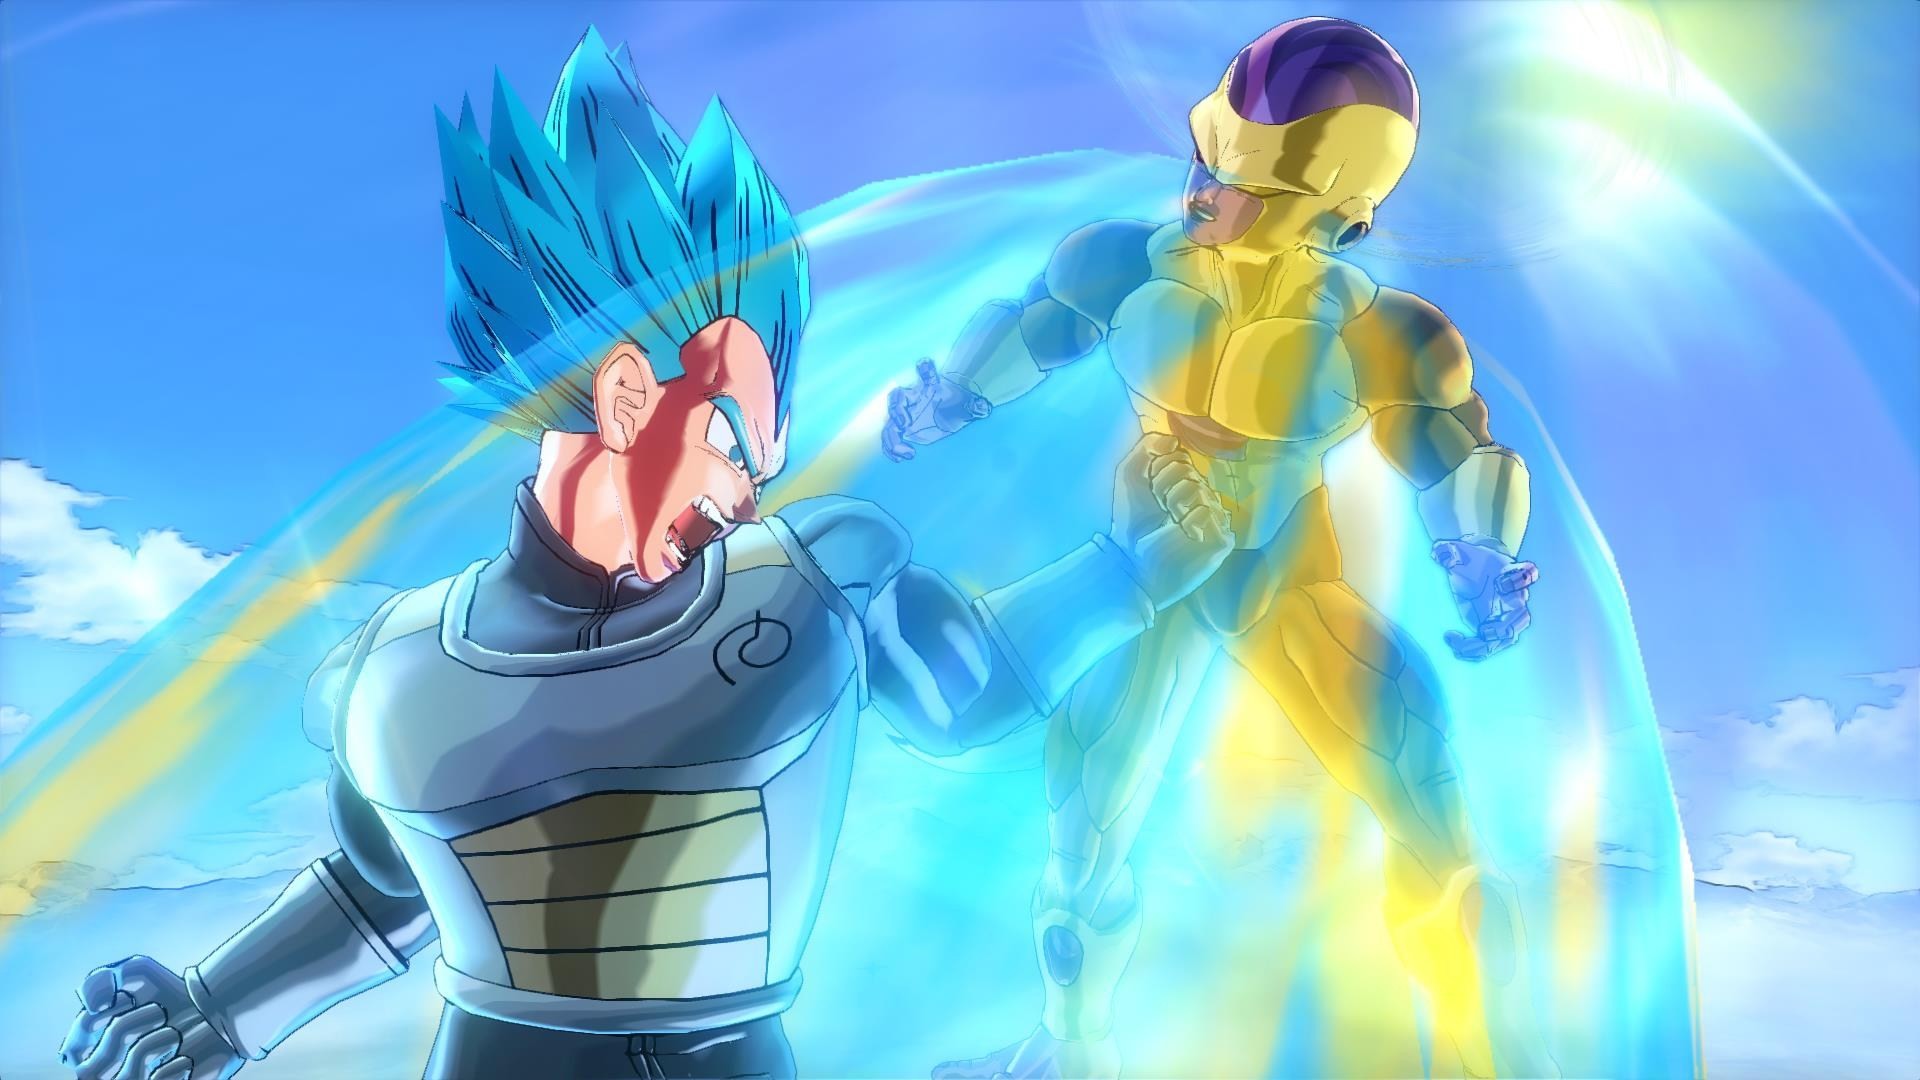 Super Saiyan God Super Saiyan Goku and Vegeta DLC for Dragon Ball